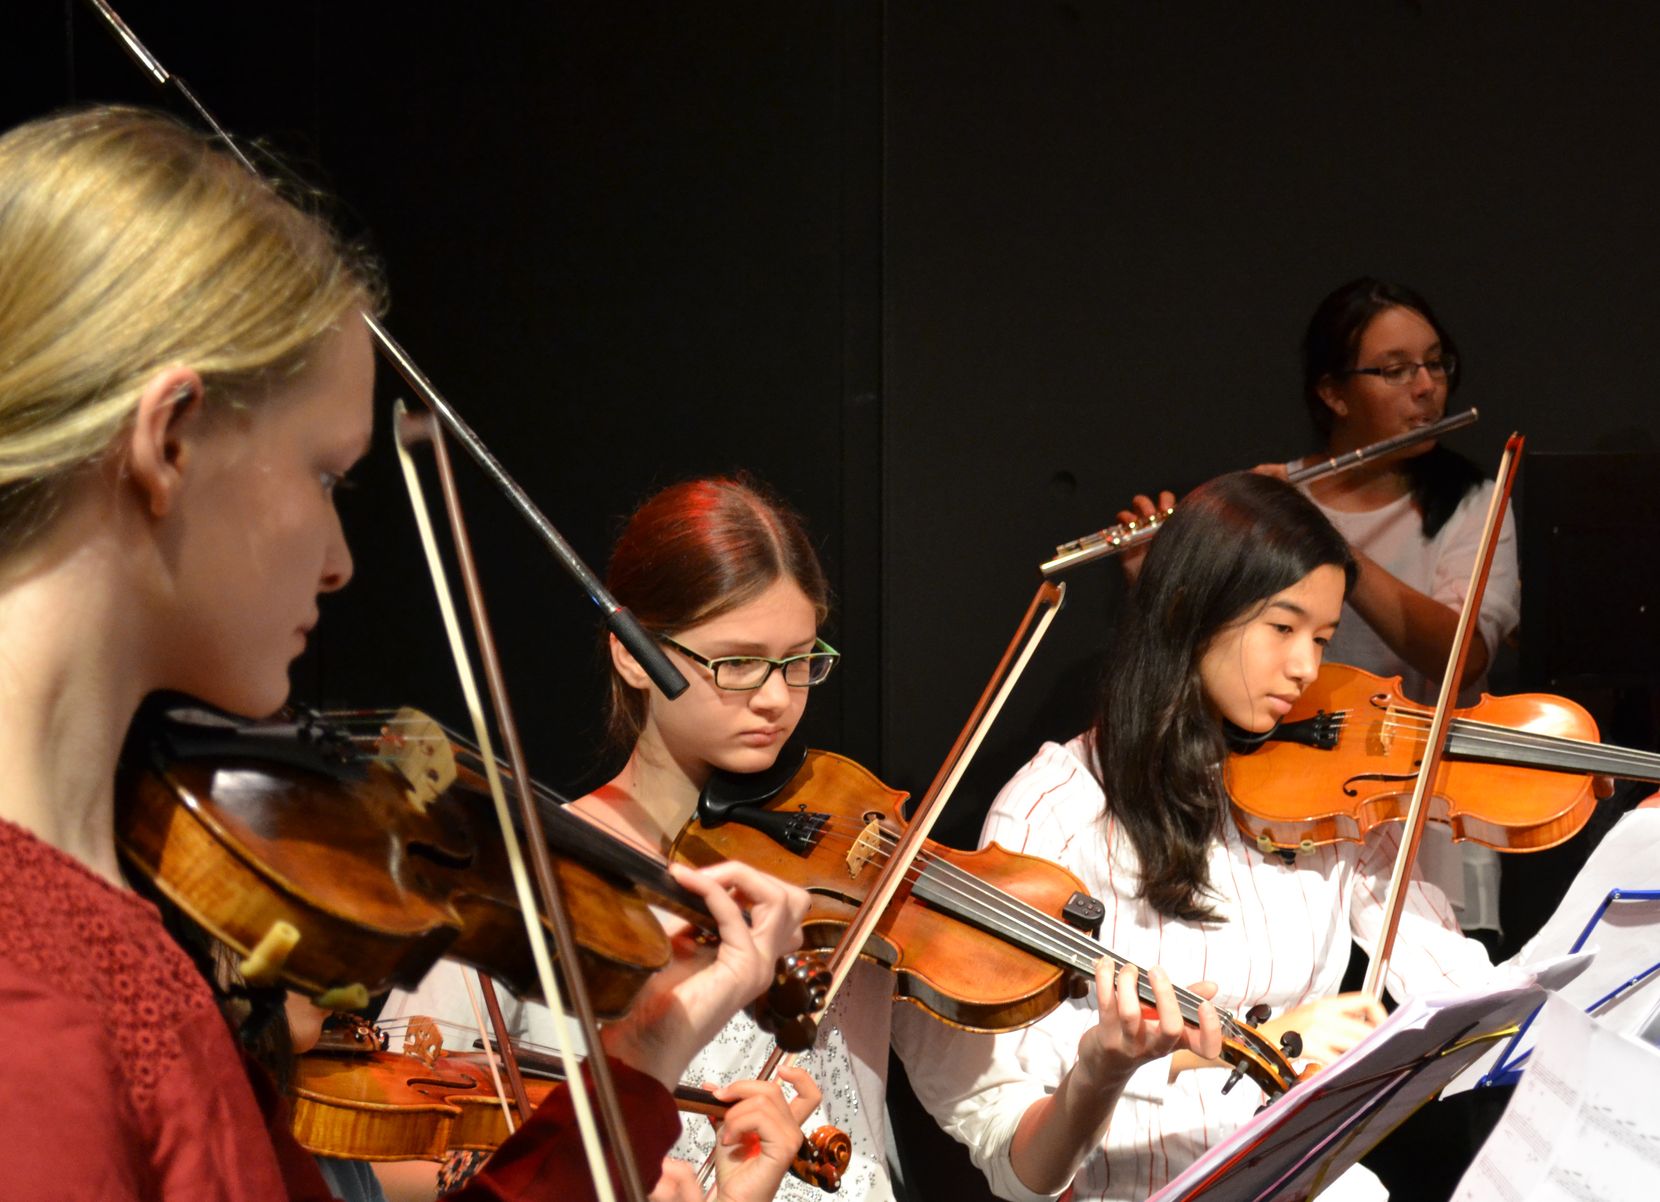 Schülerinnen und Schüler musizieren gemeinsam Geige